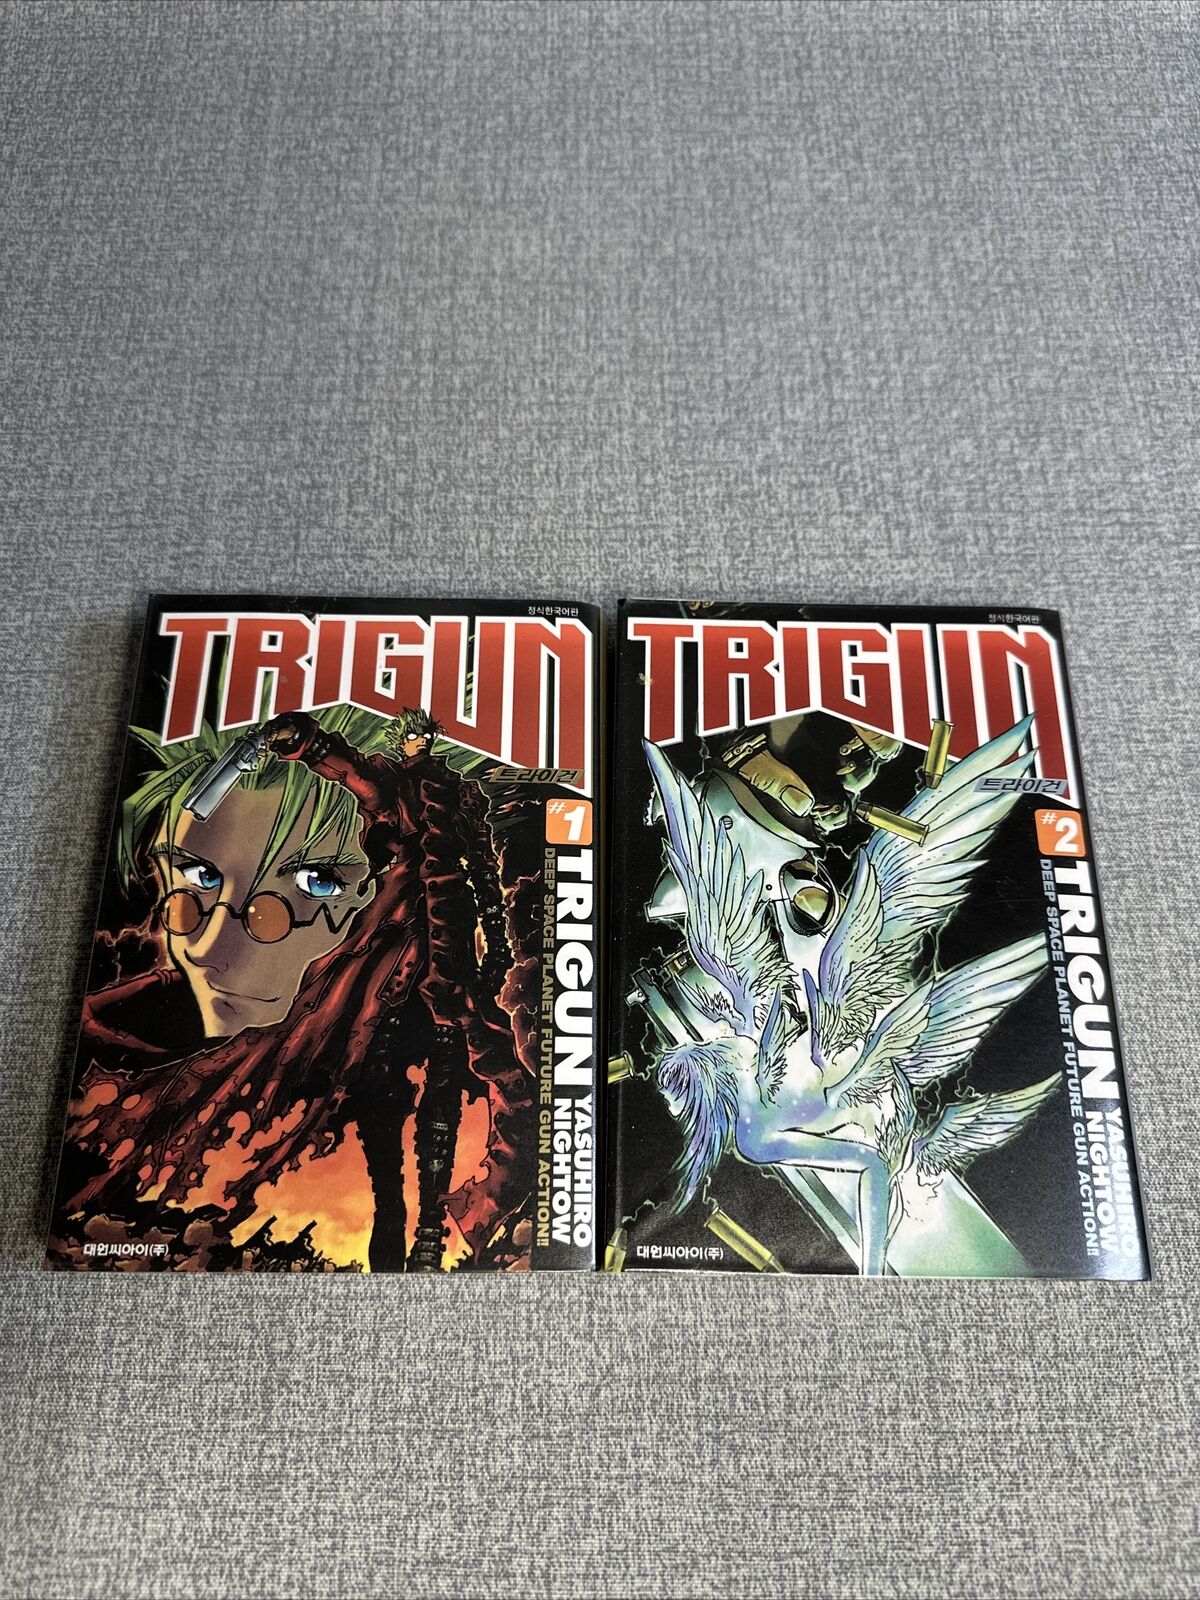 Trigun Manga Original Volumes 1-2 Japanese Lot